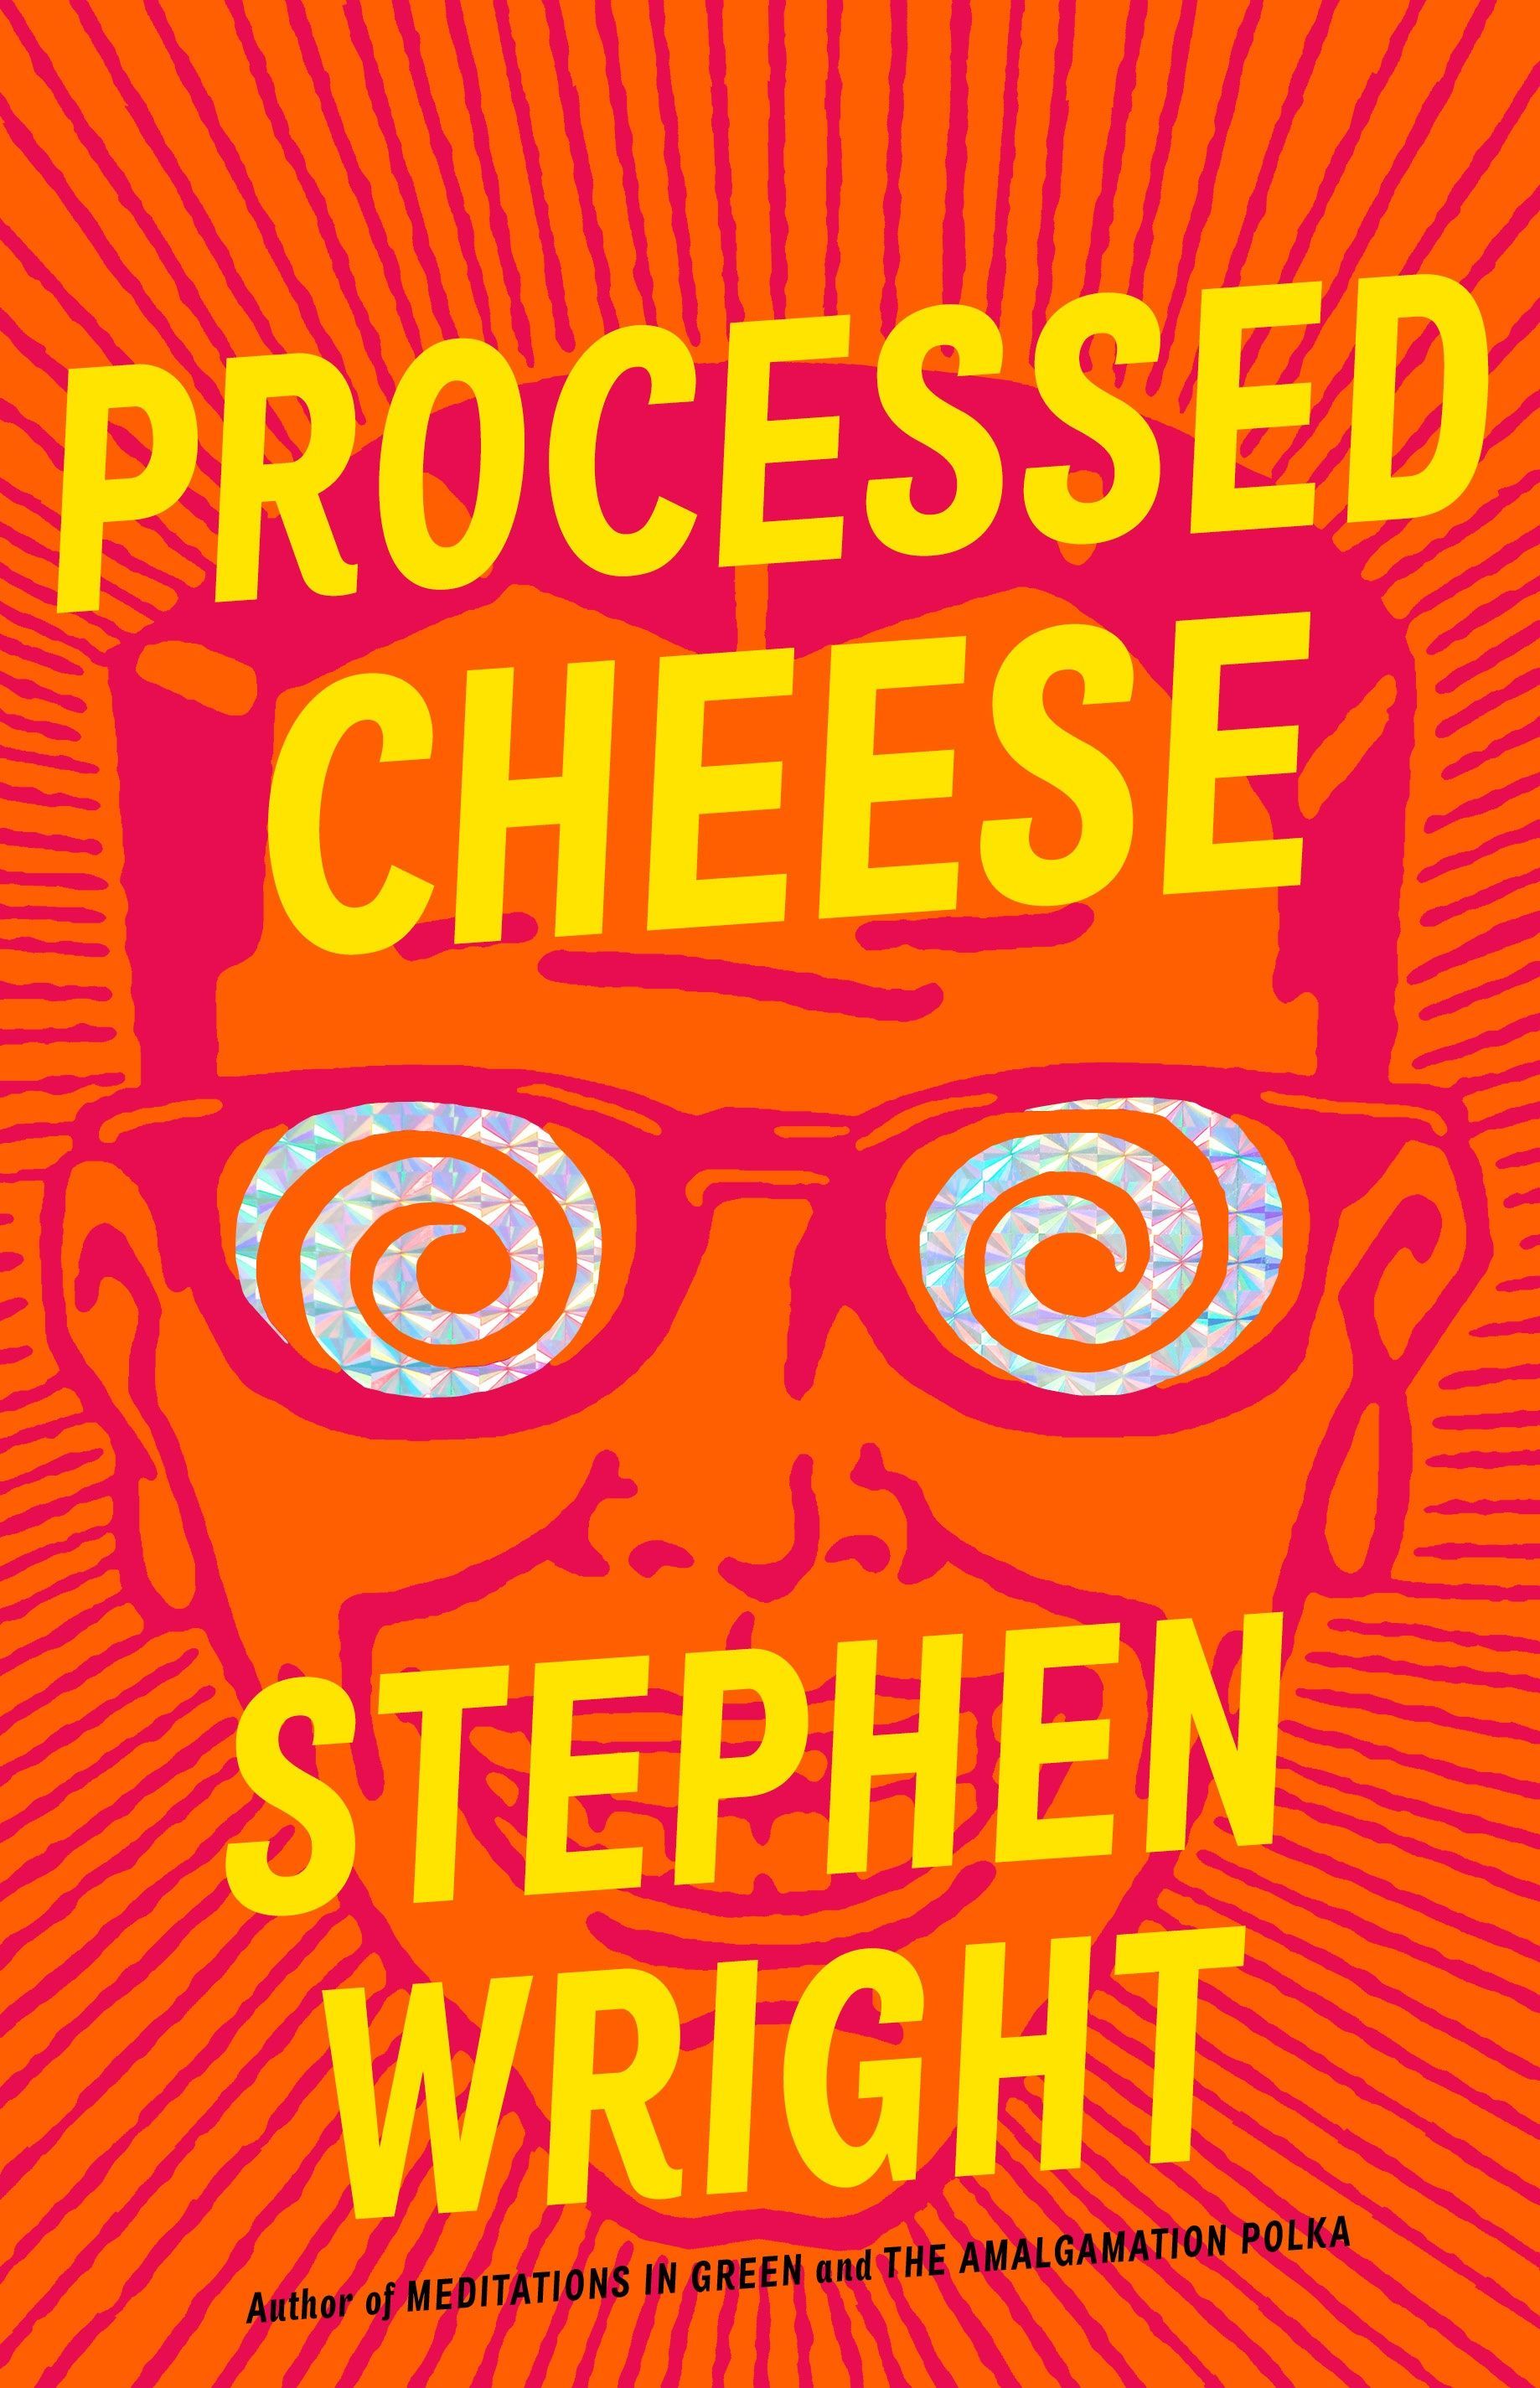 An Ersatz Wonderland: On Stephen Wright’s “Processed Cheese”